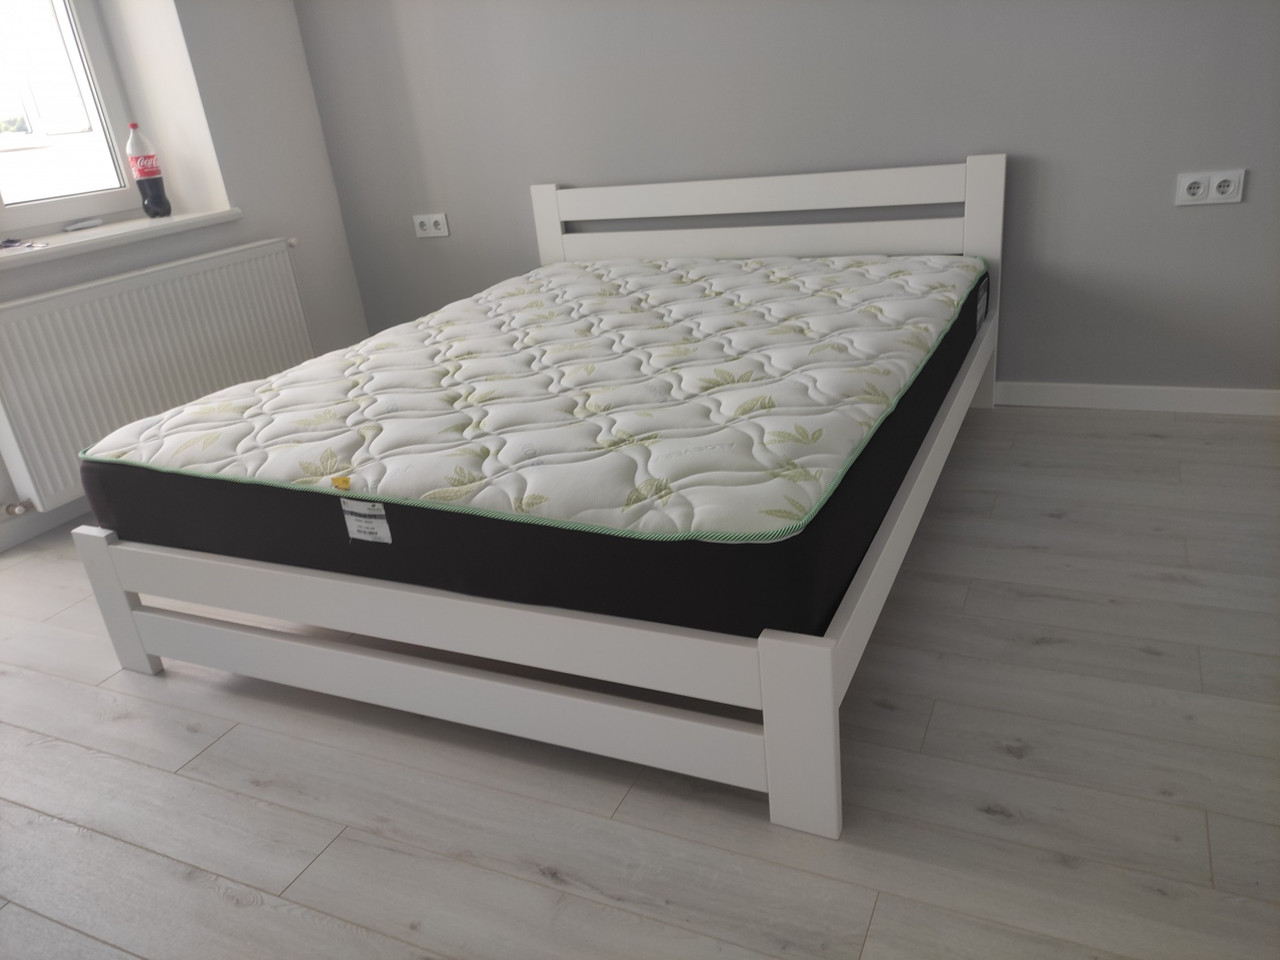 Двоспальне ліжко дерев'яна Палермо плюс 150х190 в білій емалі Крок ламелей 5,5 см.